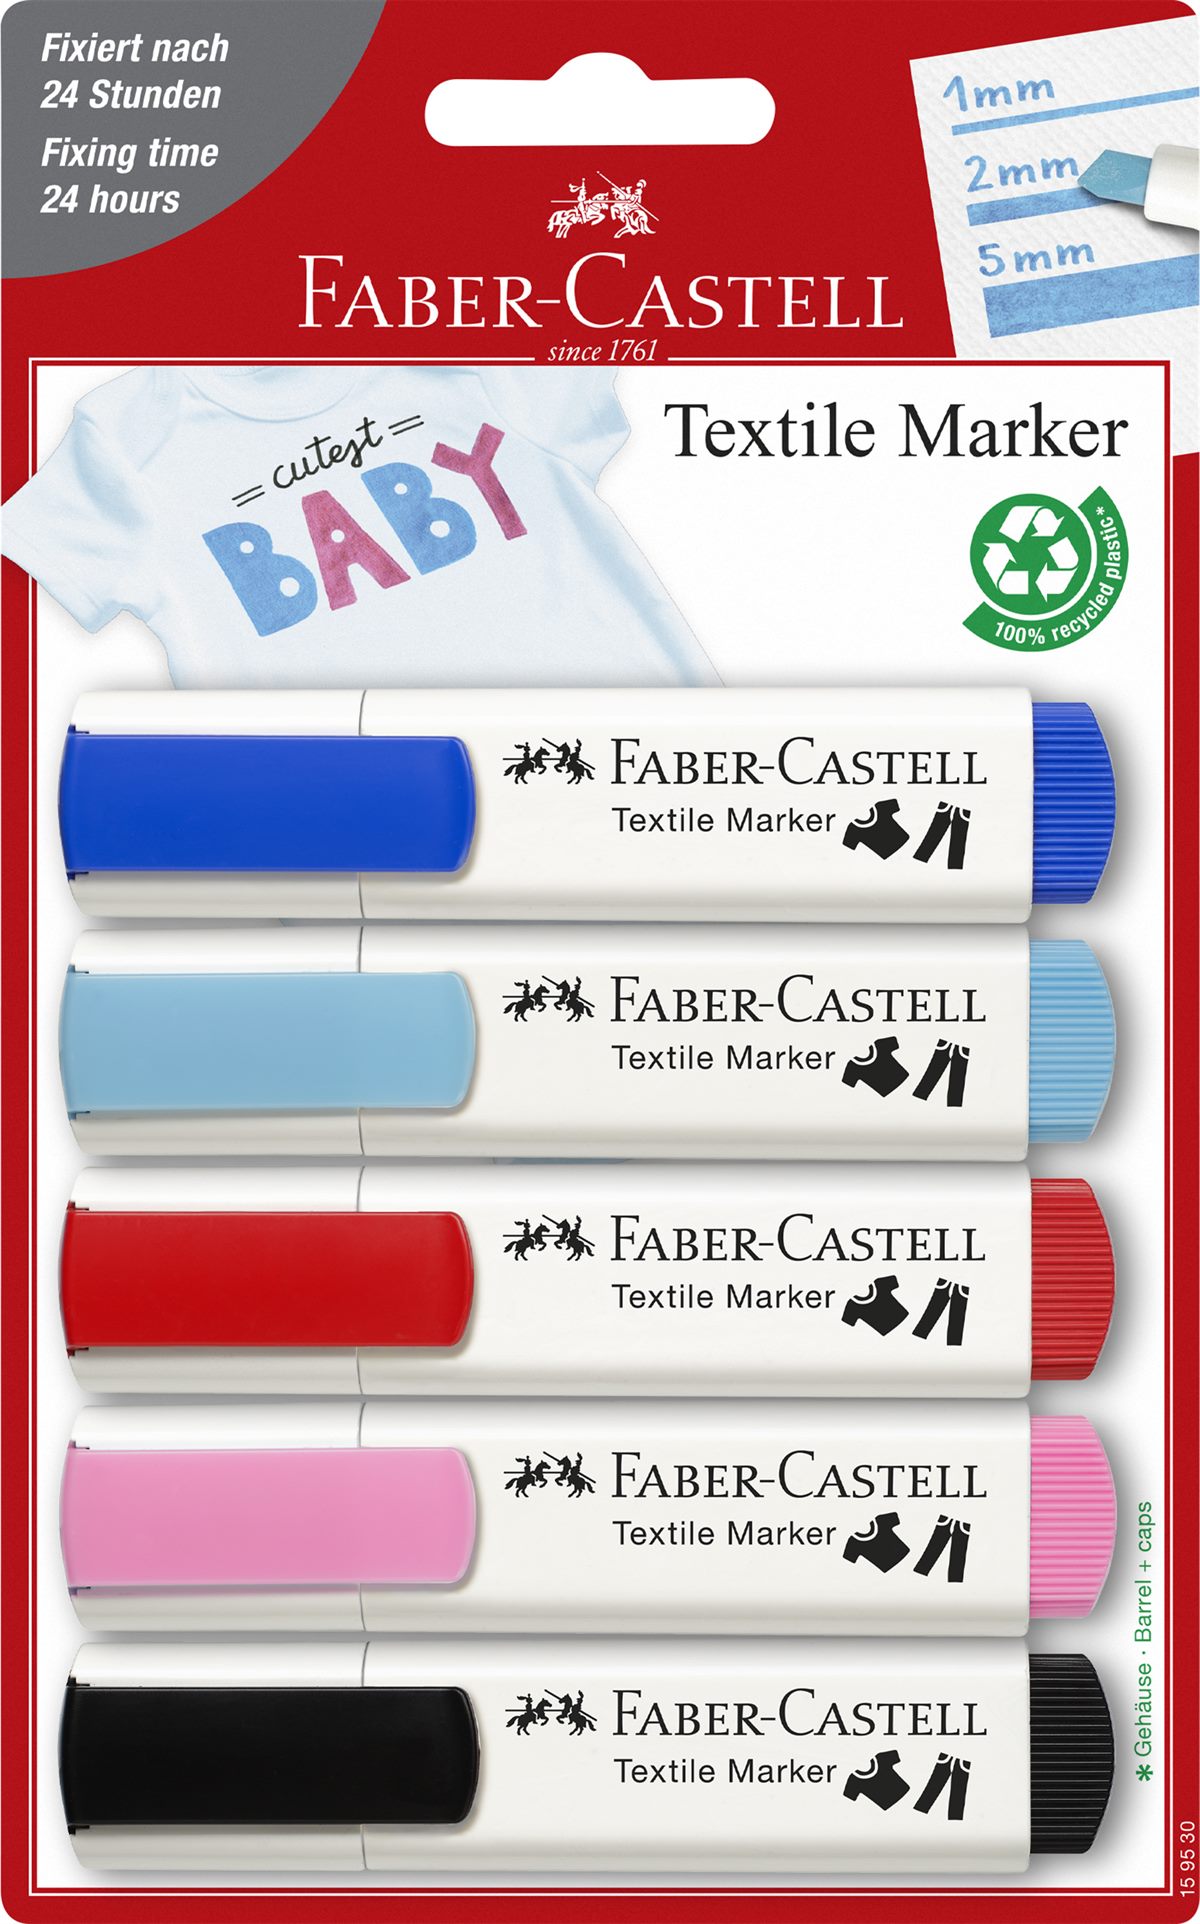 Faber-Castell_Textilmarker_Set Baby aus 5_6,75 EUR